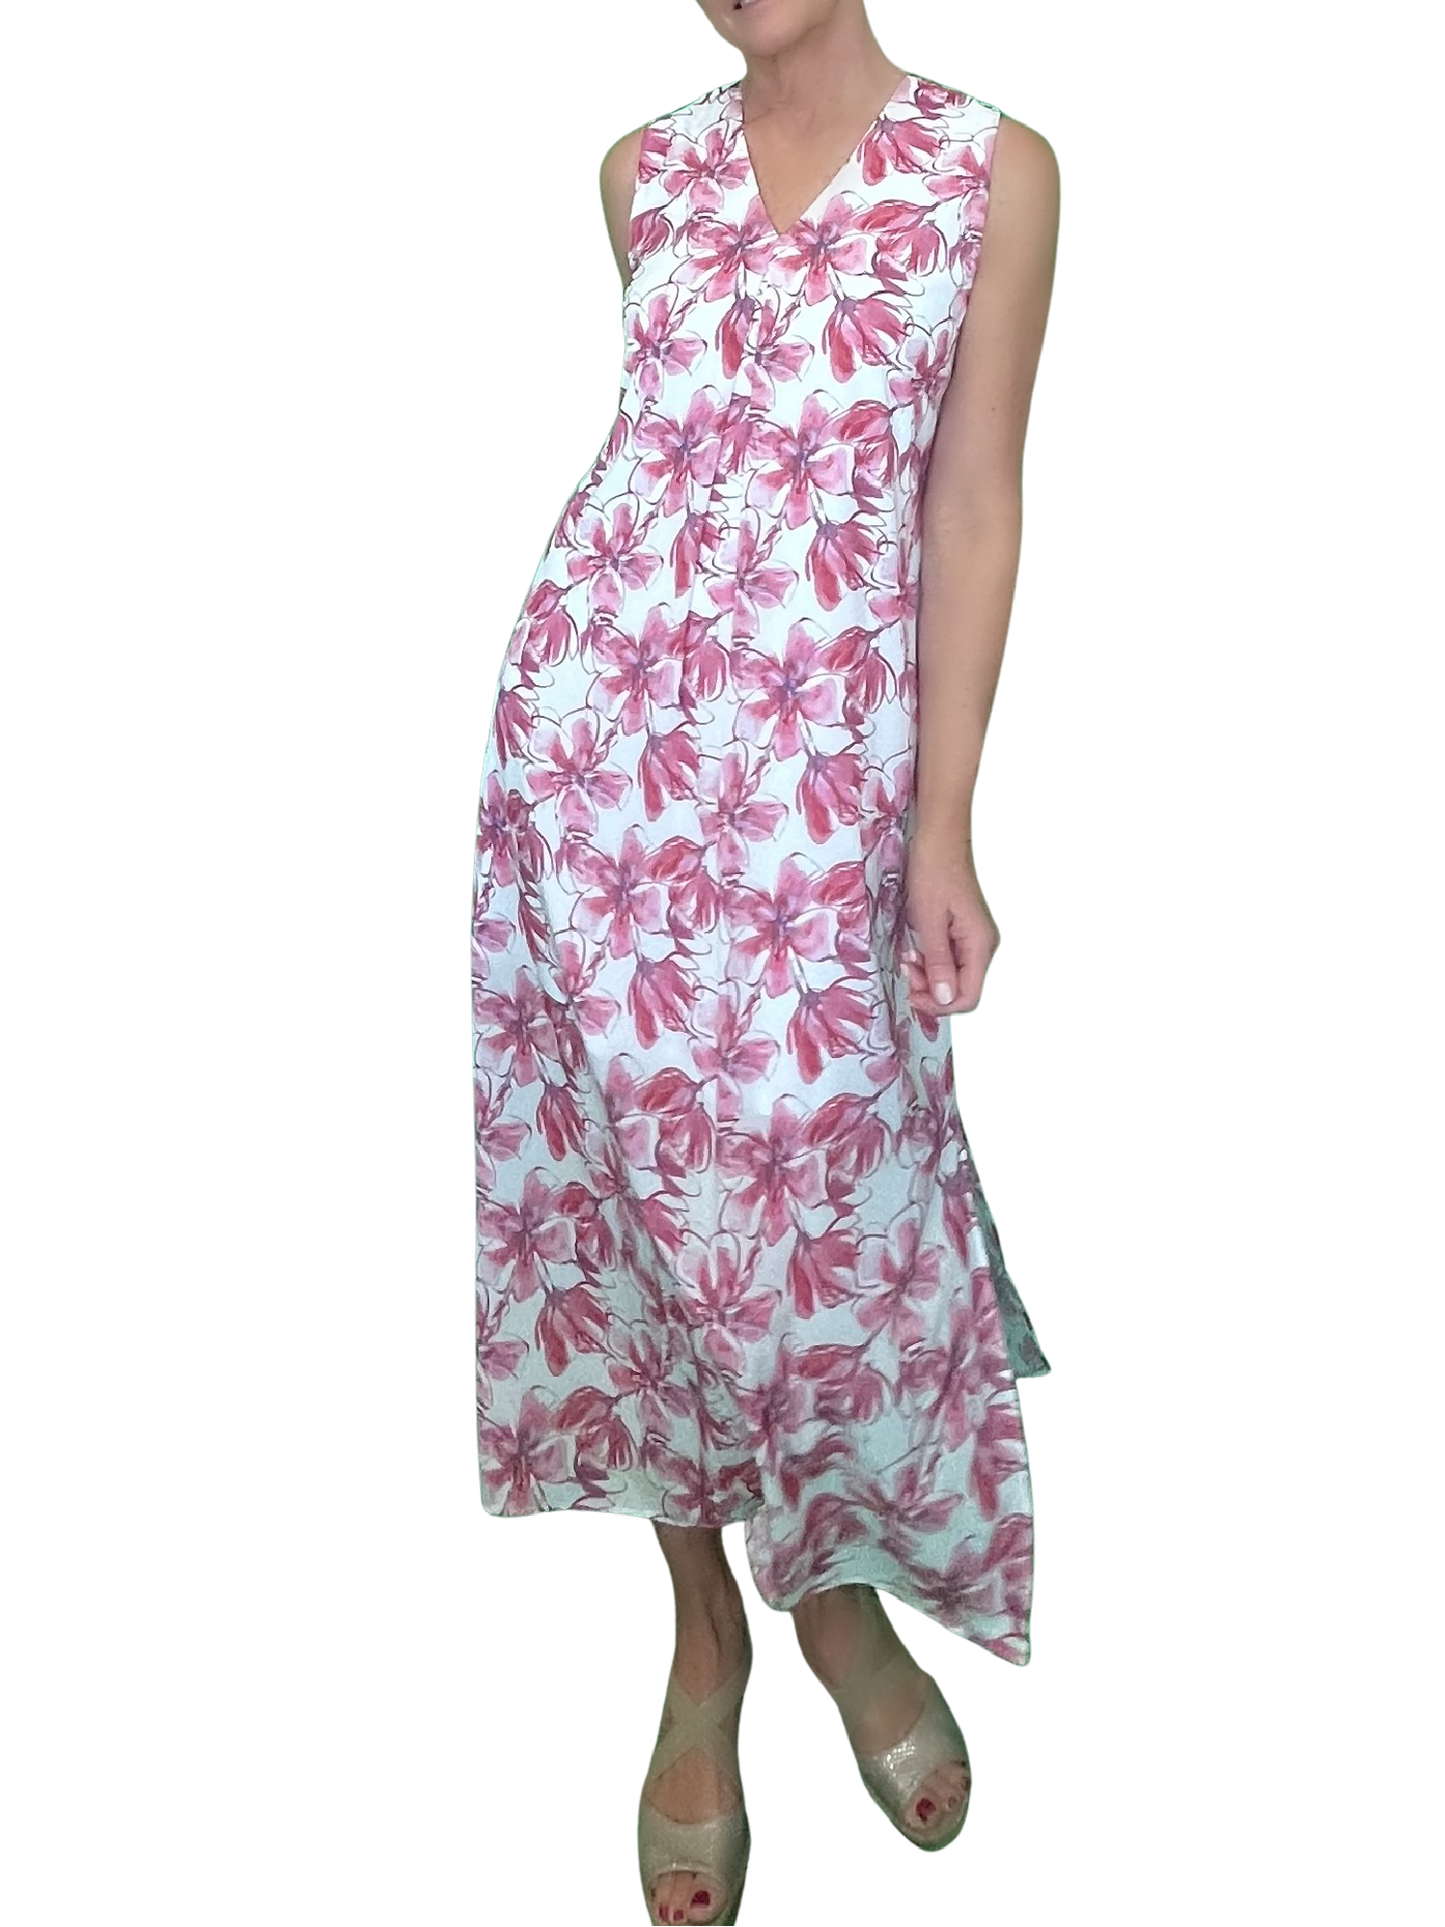 Maxi Pleat Dress - Raspberry Floral Print